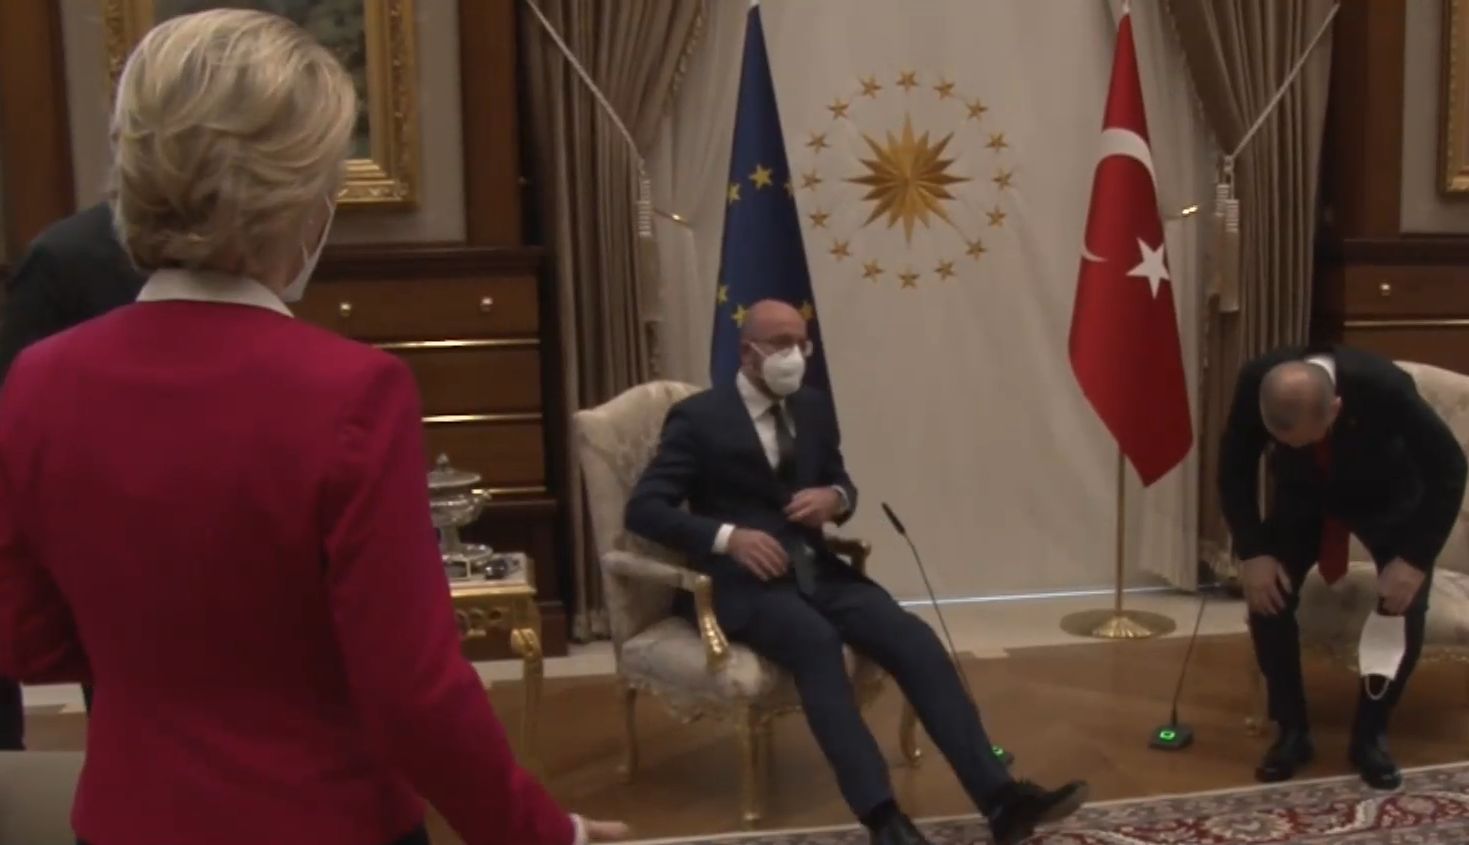  SofaGate lo sgarbo di Erdogan  a Von  der  Leyen  e all 